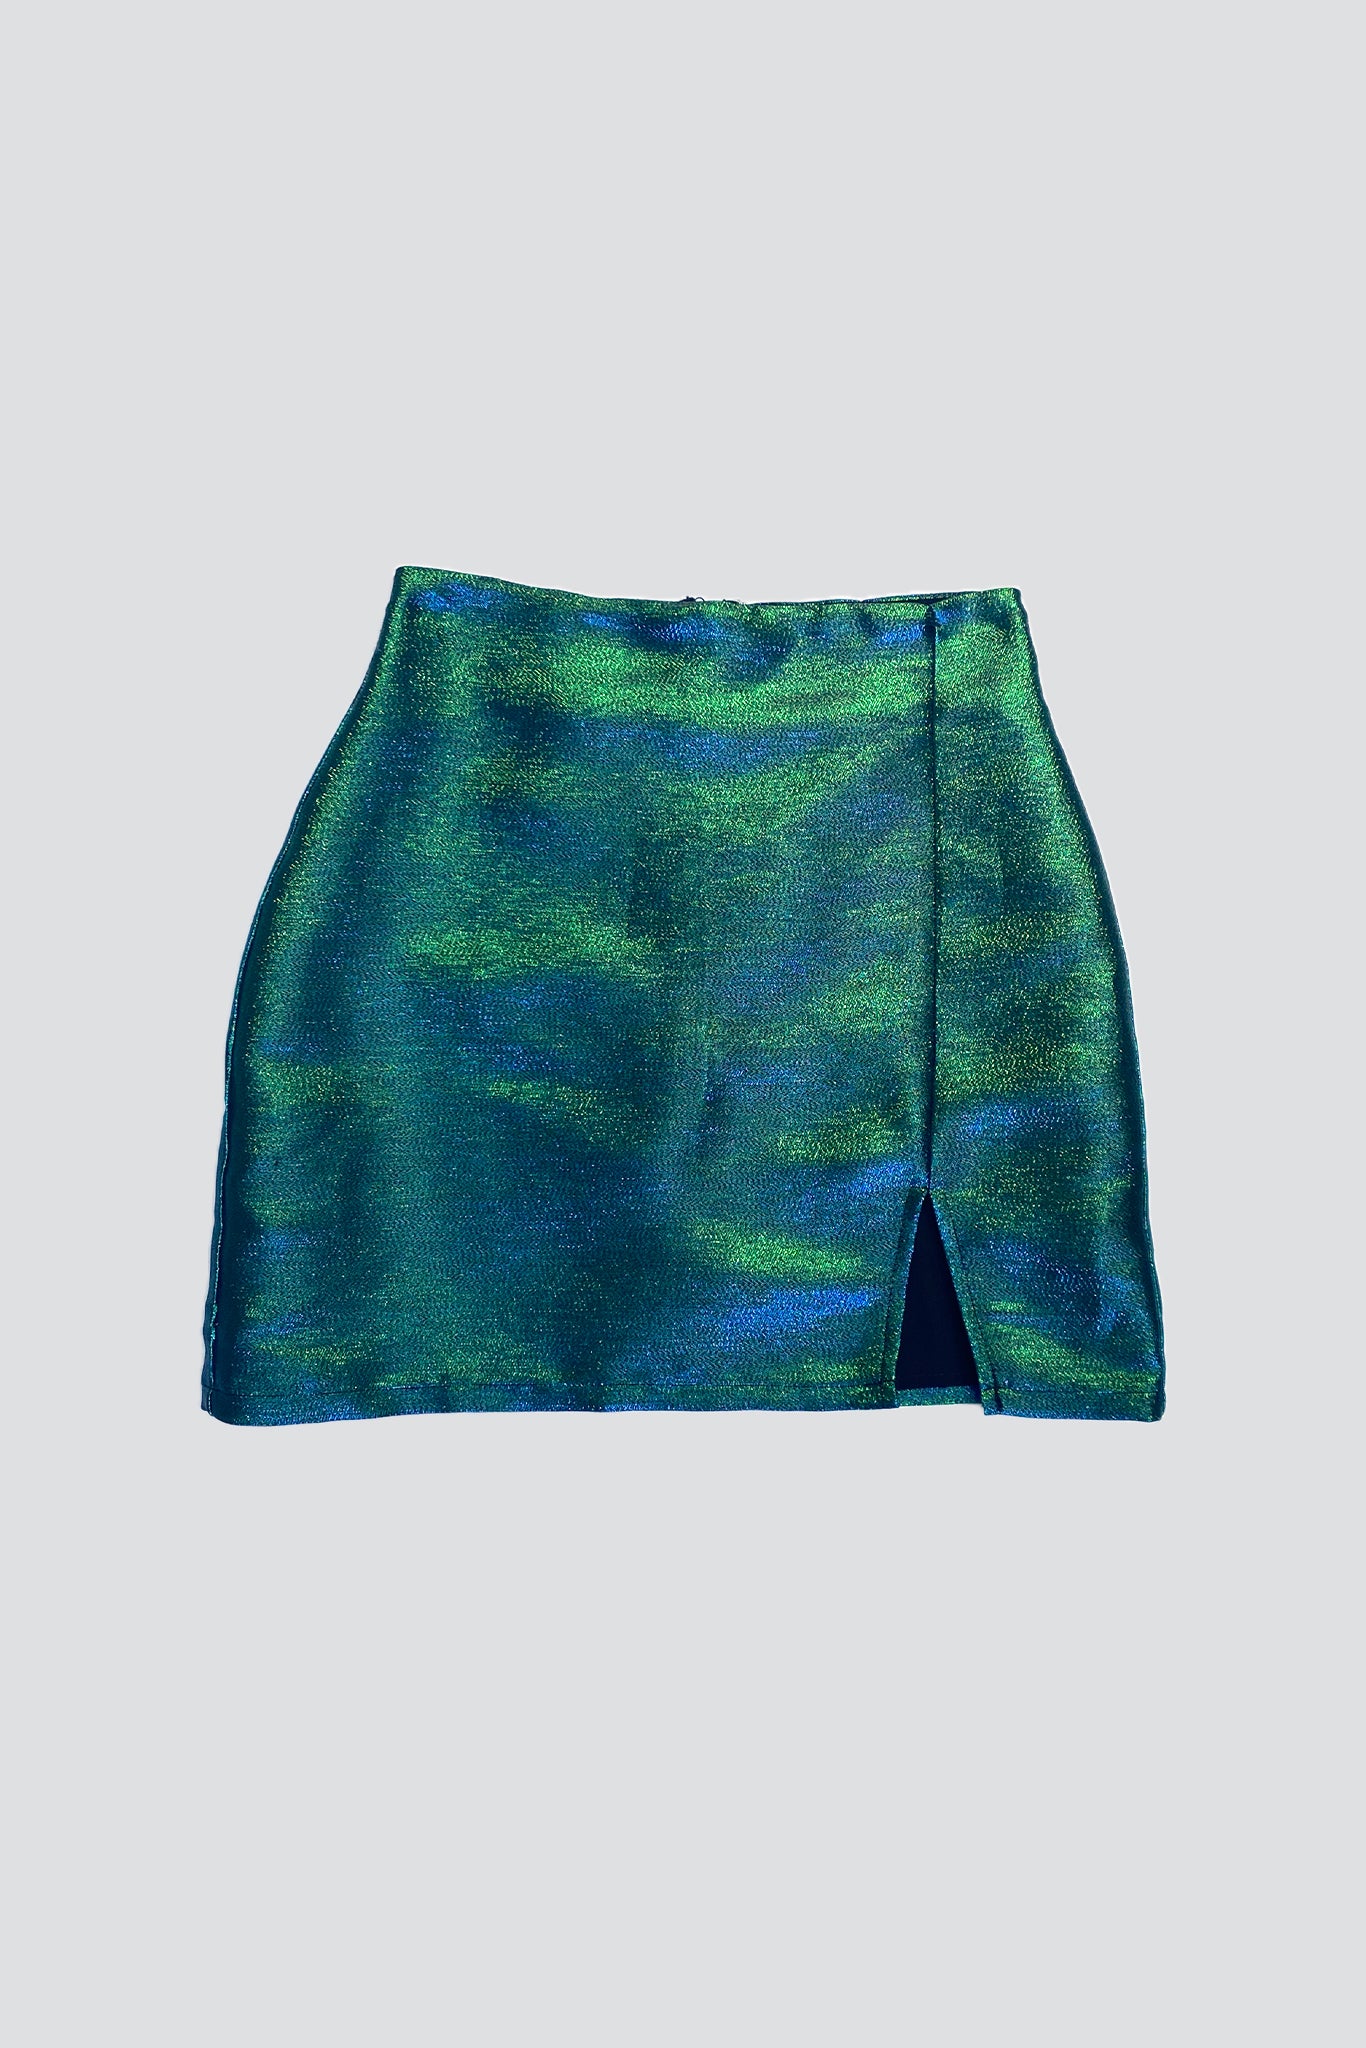 Blue/Green Shimmer Mini Skirt